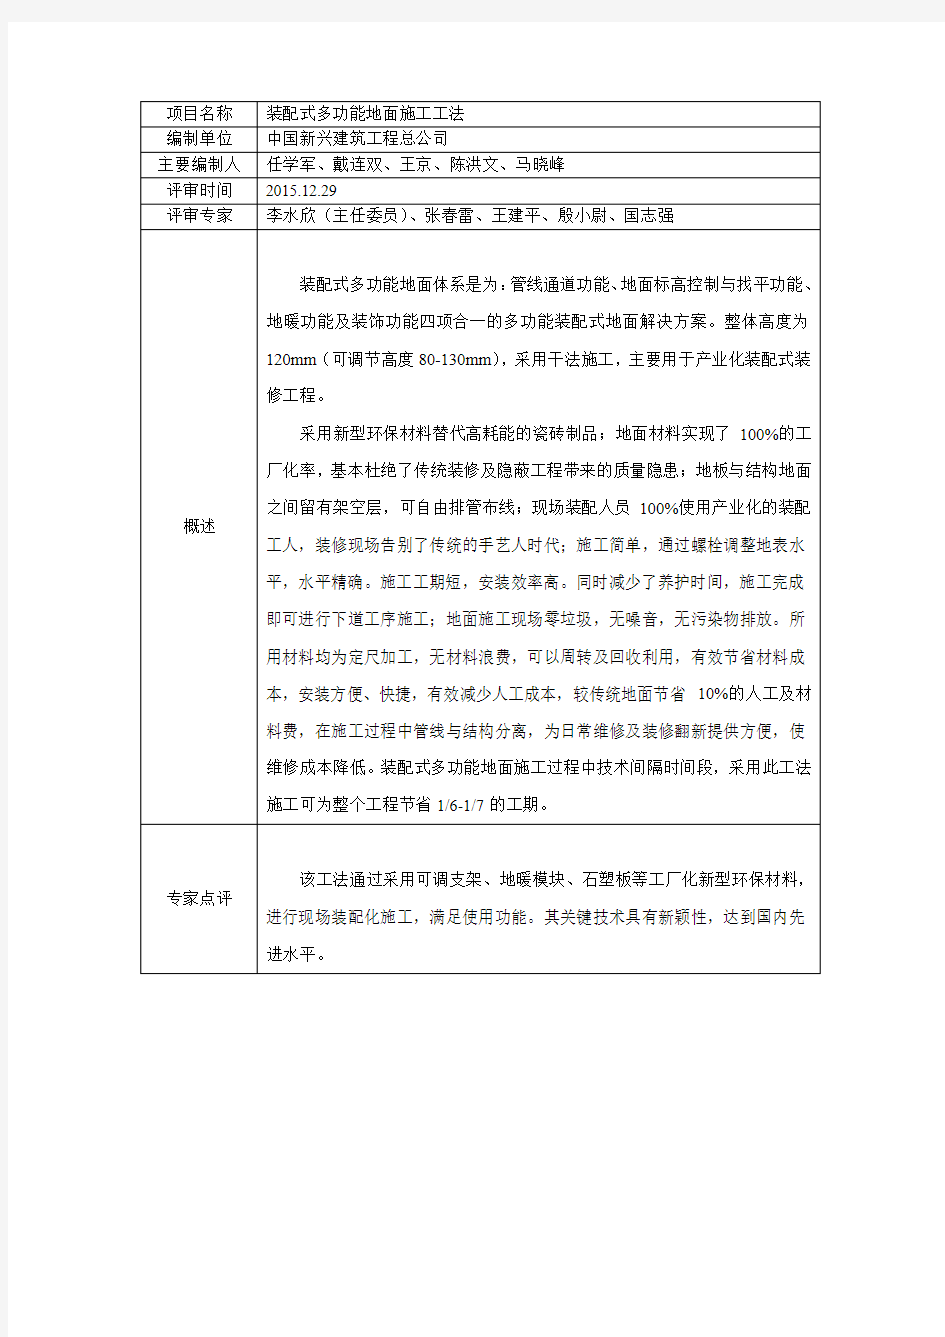 2015年度北京市工法通过评审项目公示